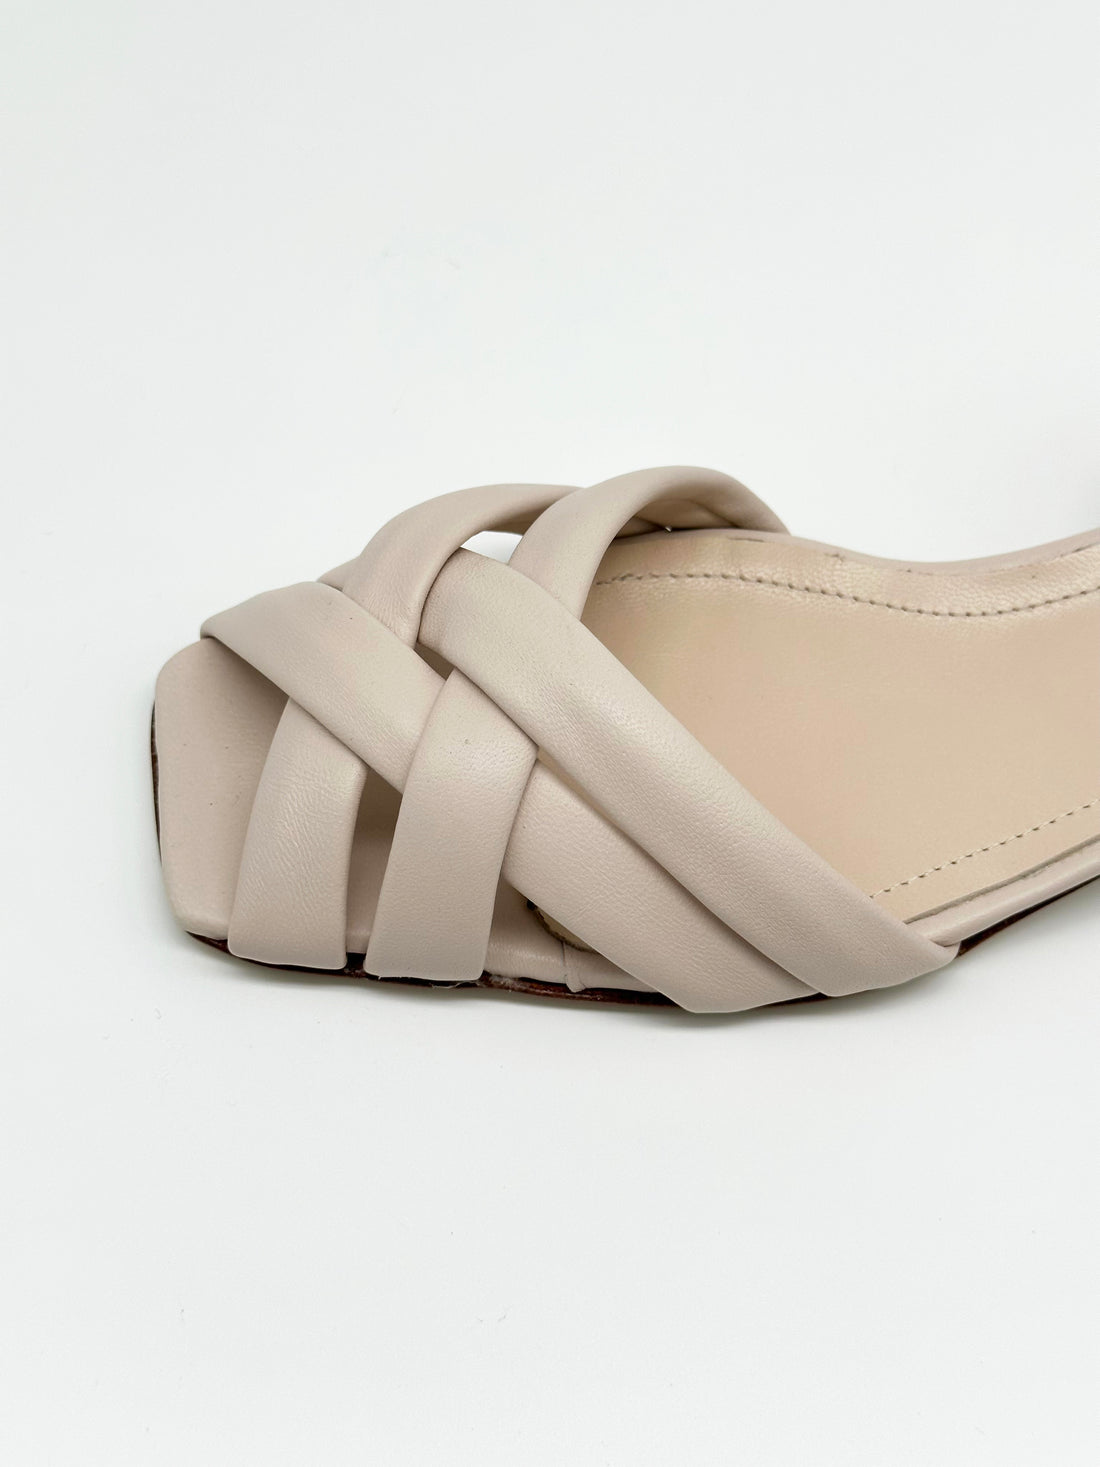 Ankle Wrap Sandal Blush - Sample Size 37